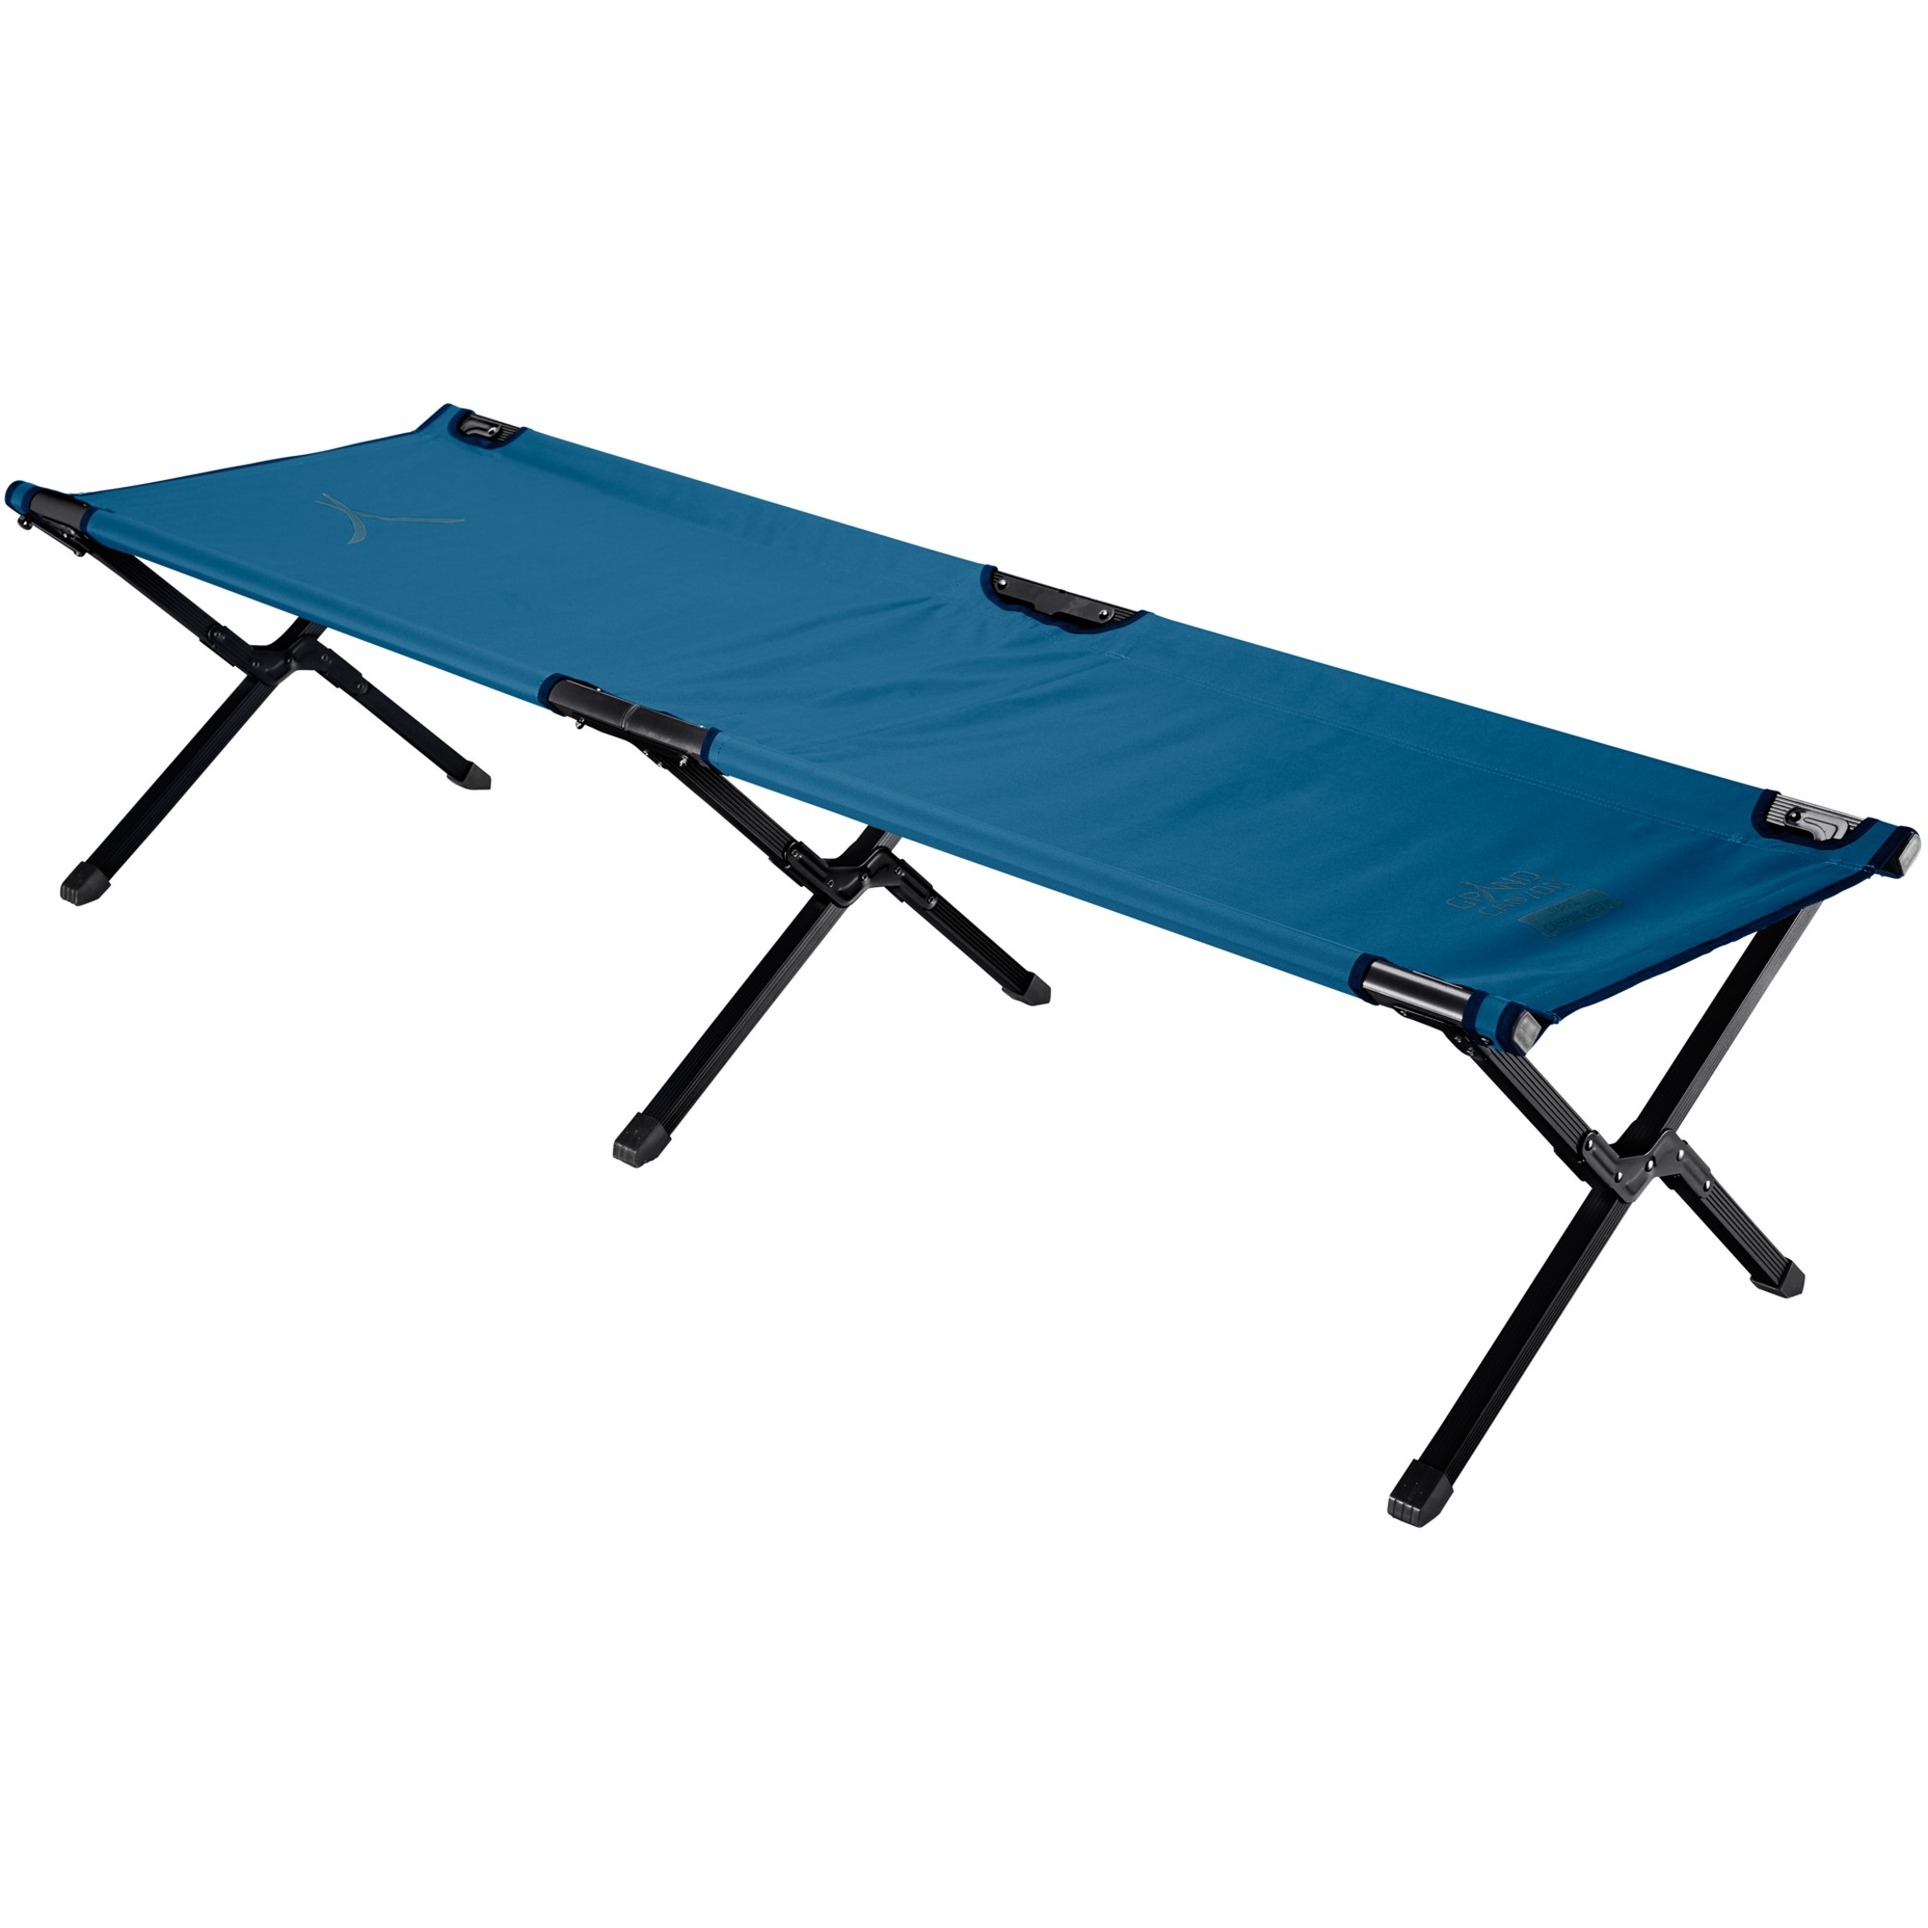 Image of Alternate - Topaz Camping Bed M 360017, Camping-Bett online einkaufen bei Alternate